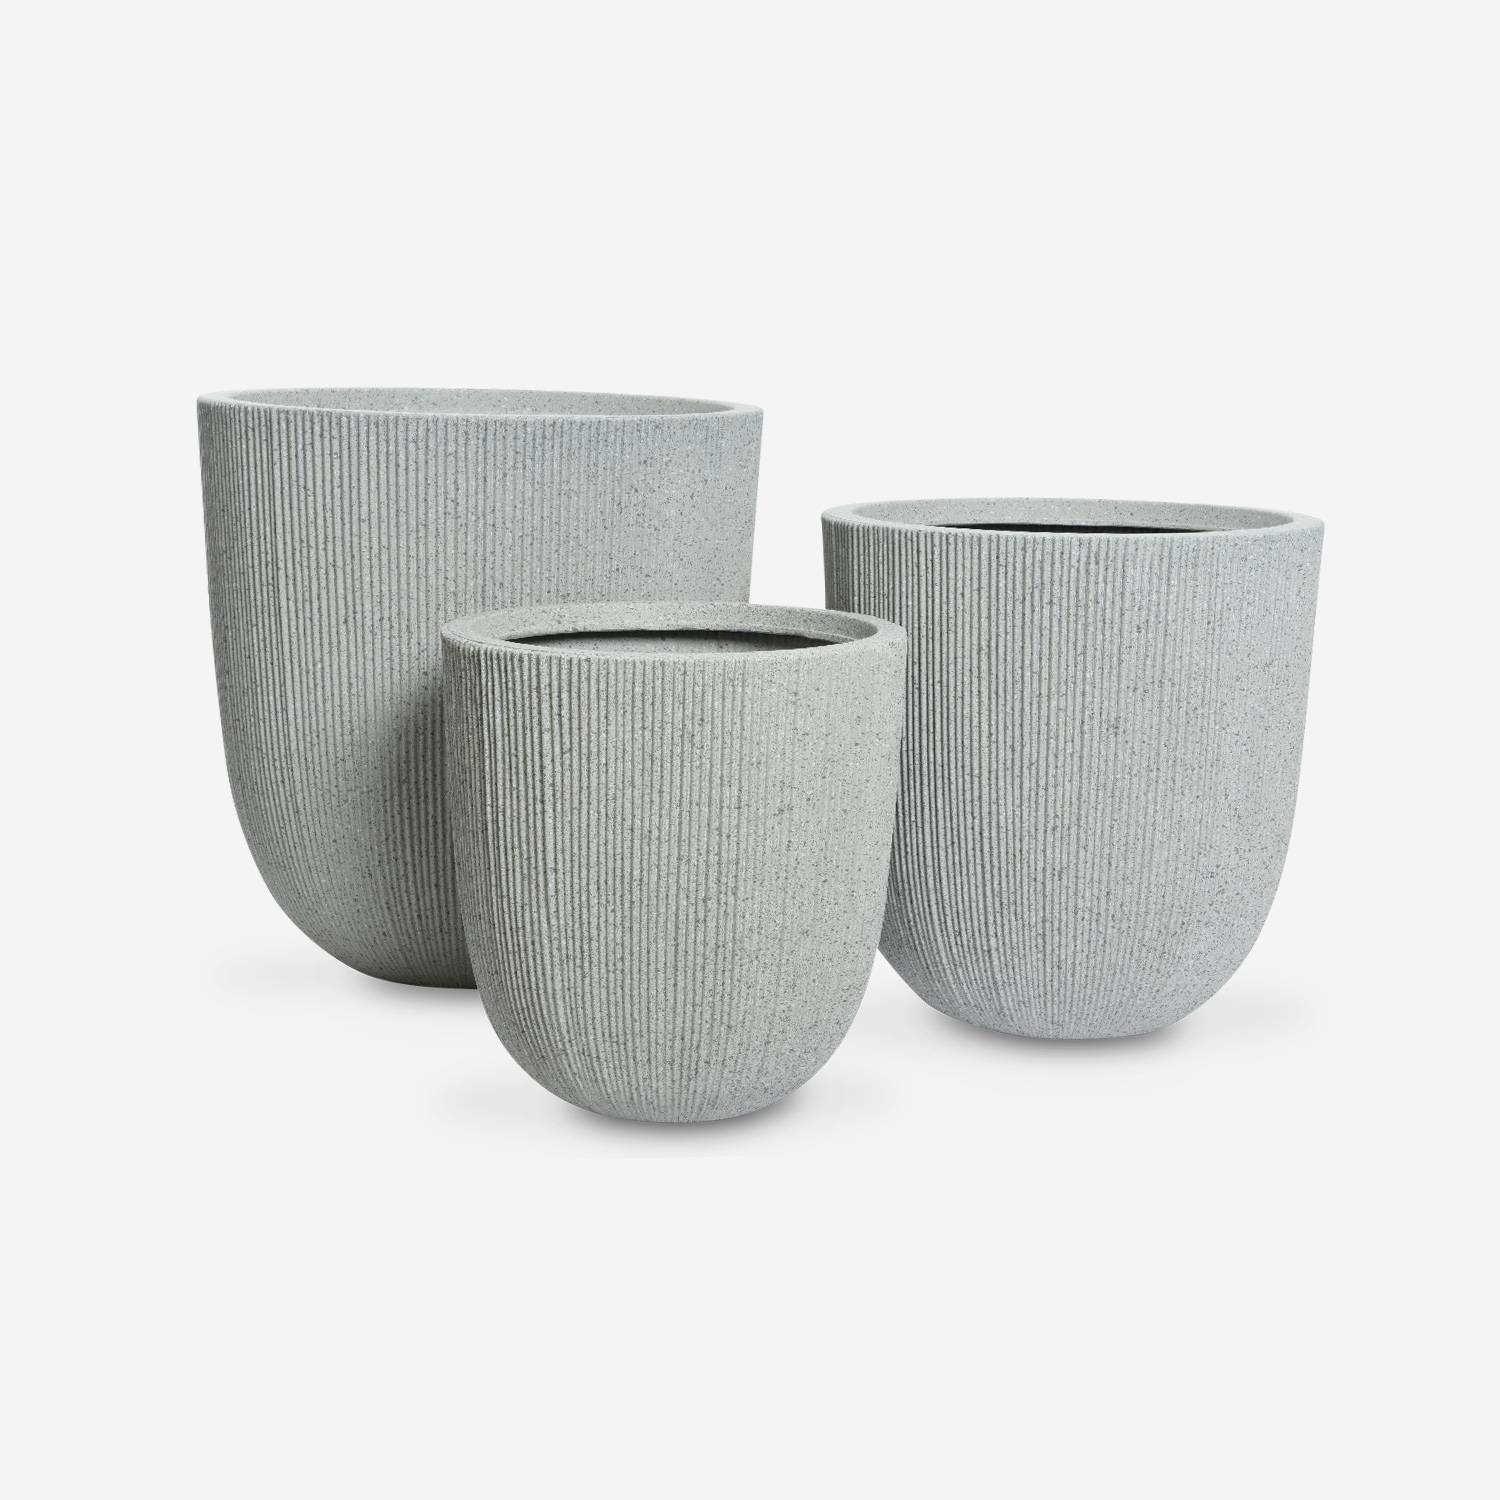 Lot de 3 caches pots – Hibiscus – vases en plastique, 3 tailles, ronds, gris clair, emboitables  Photo3